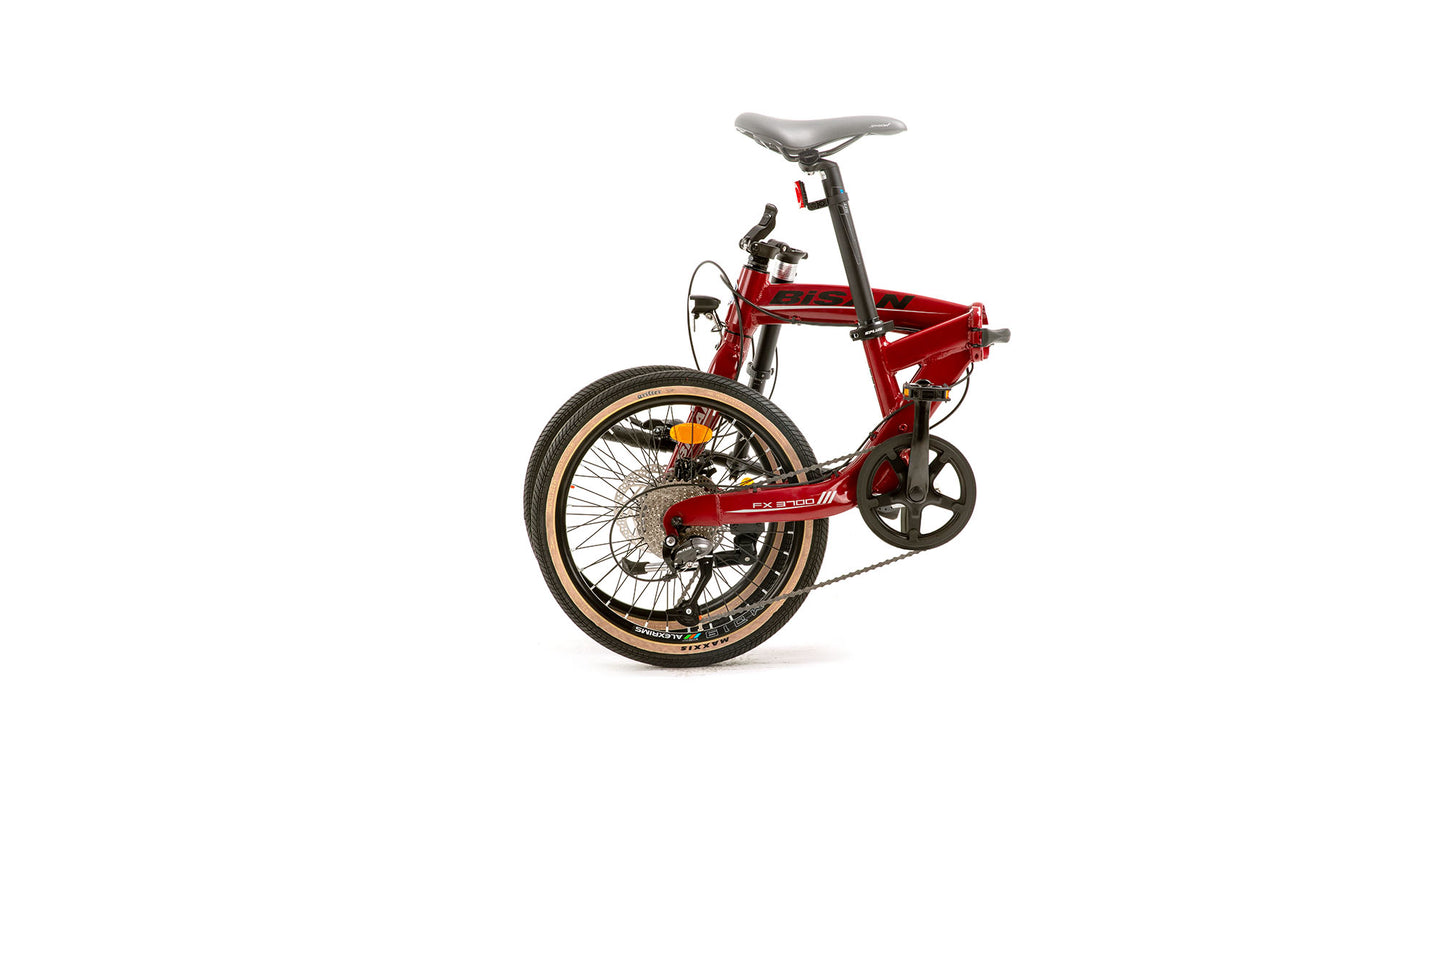 Bisan FX 3700 Altus - Folding Bike